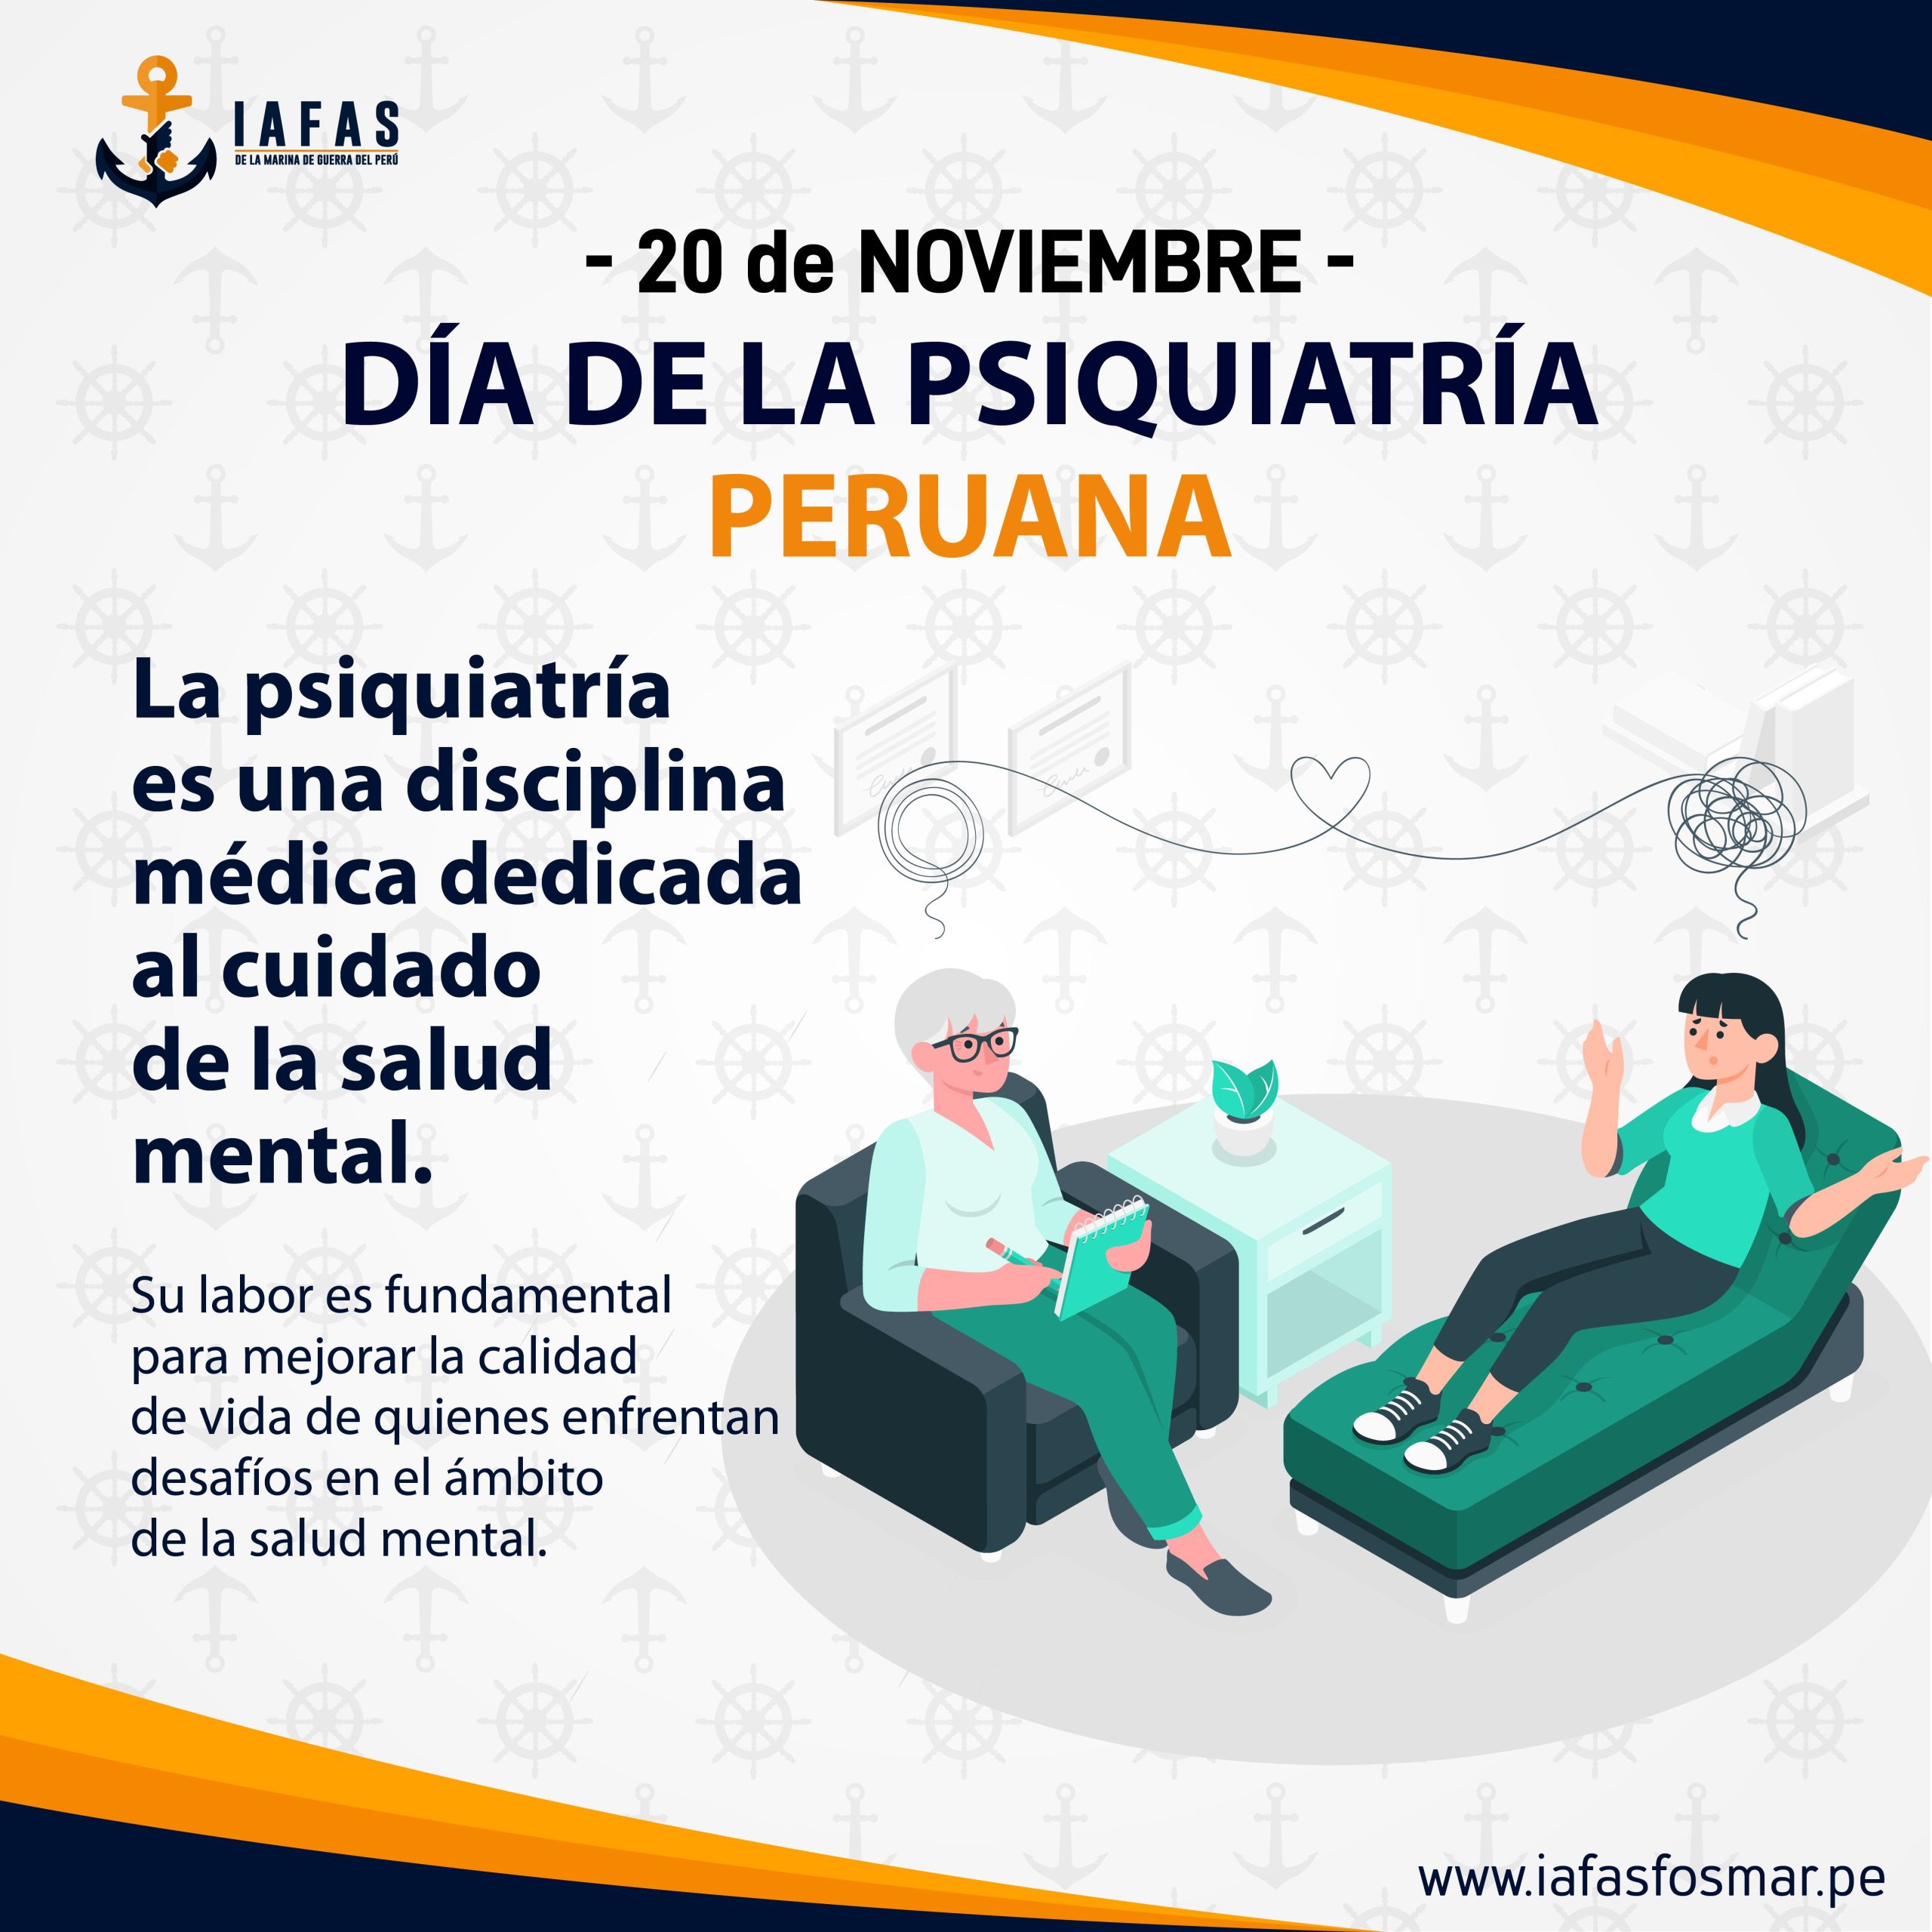 Día de la psiquiatría peruana (20 de noviembre)